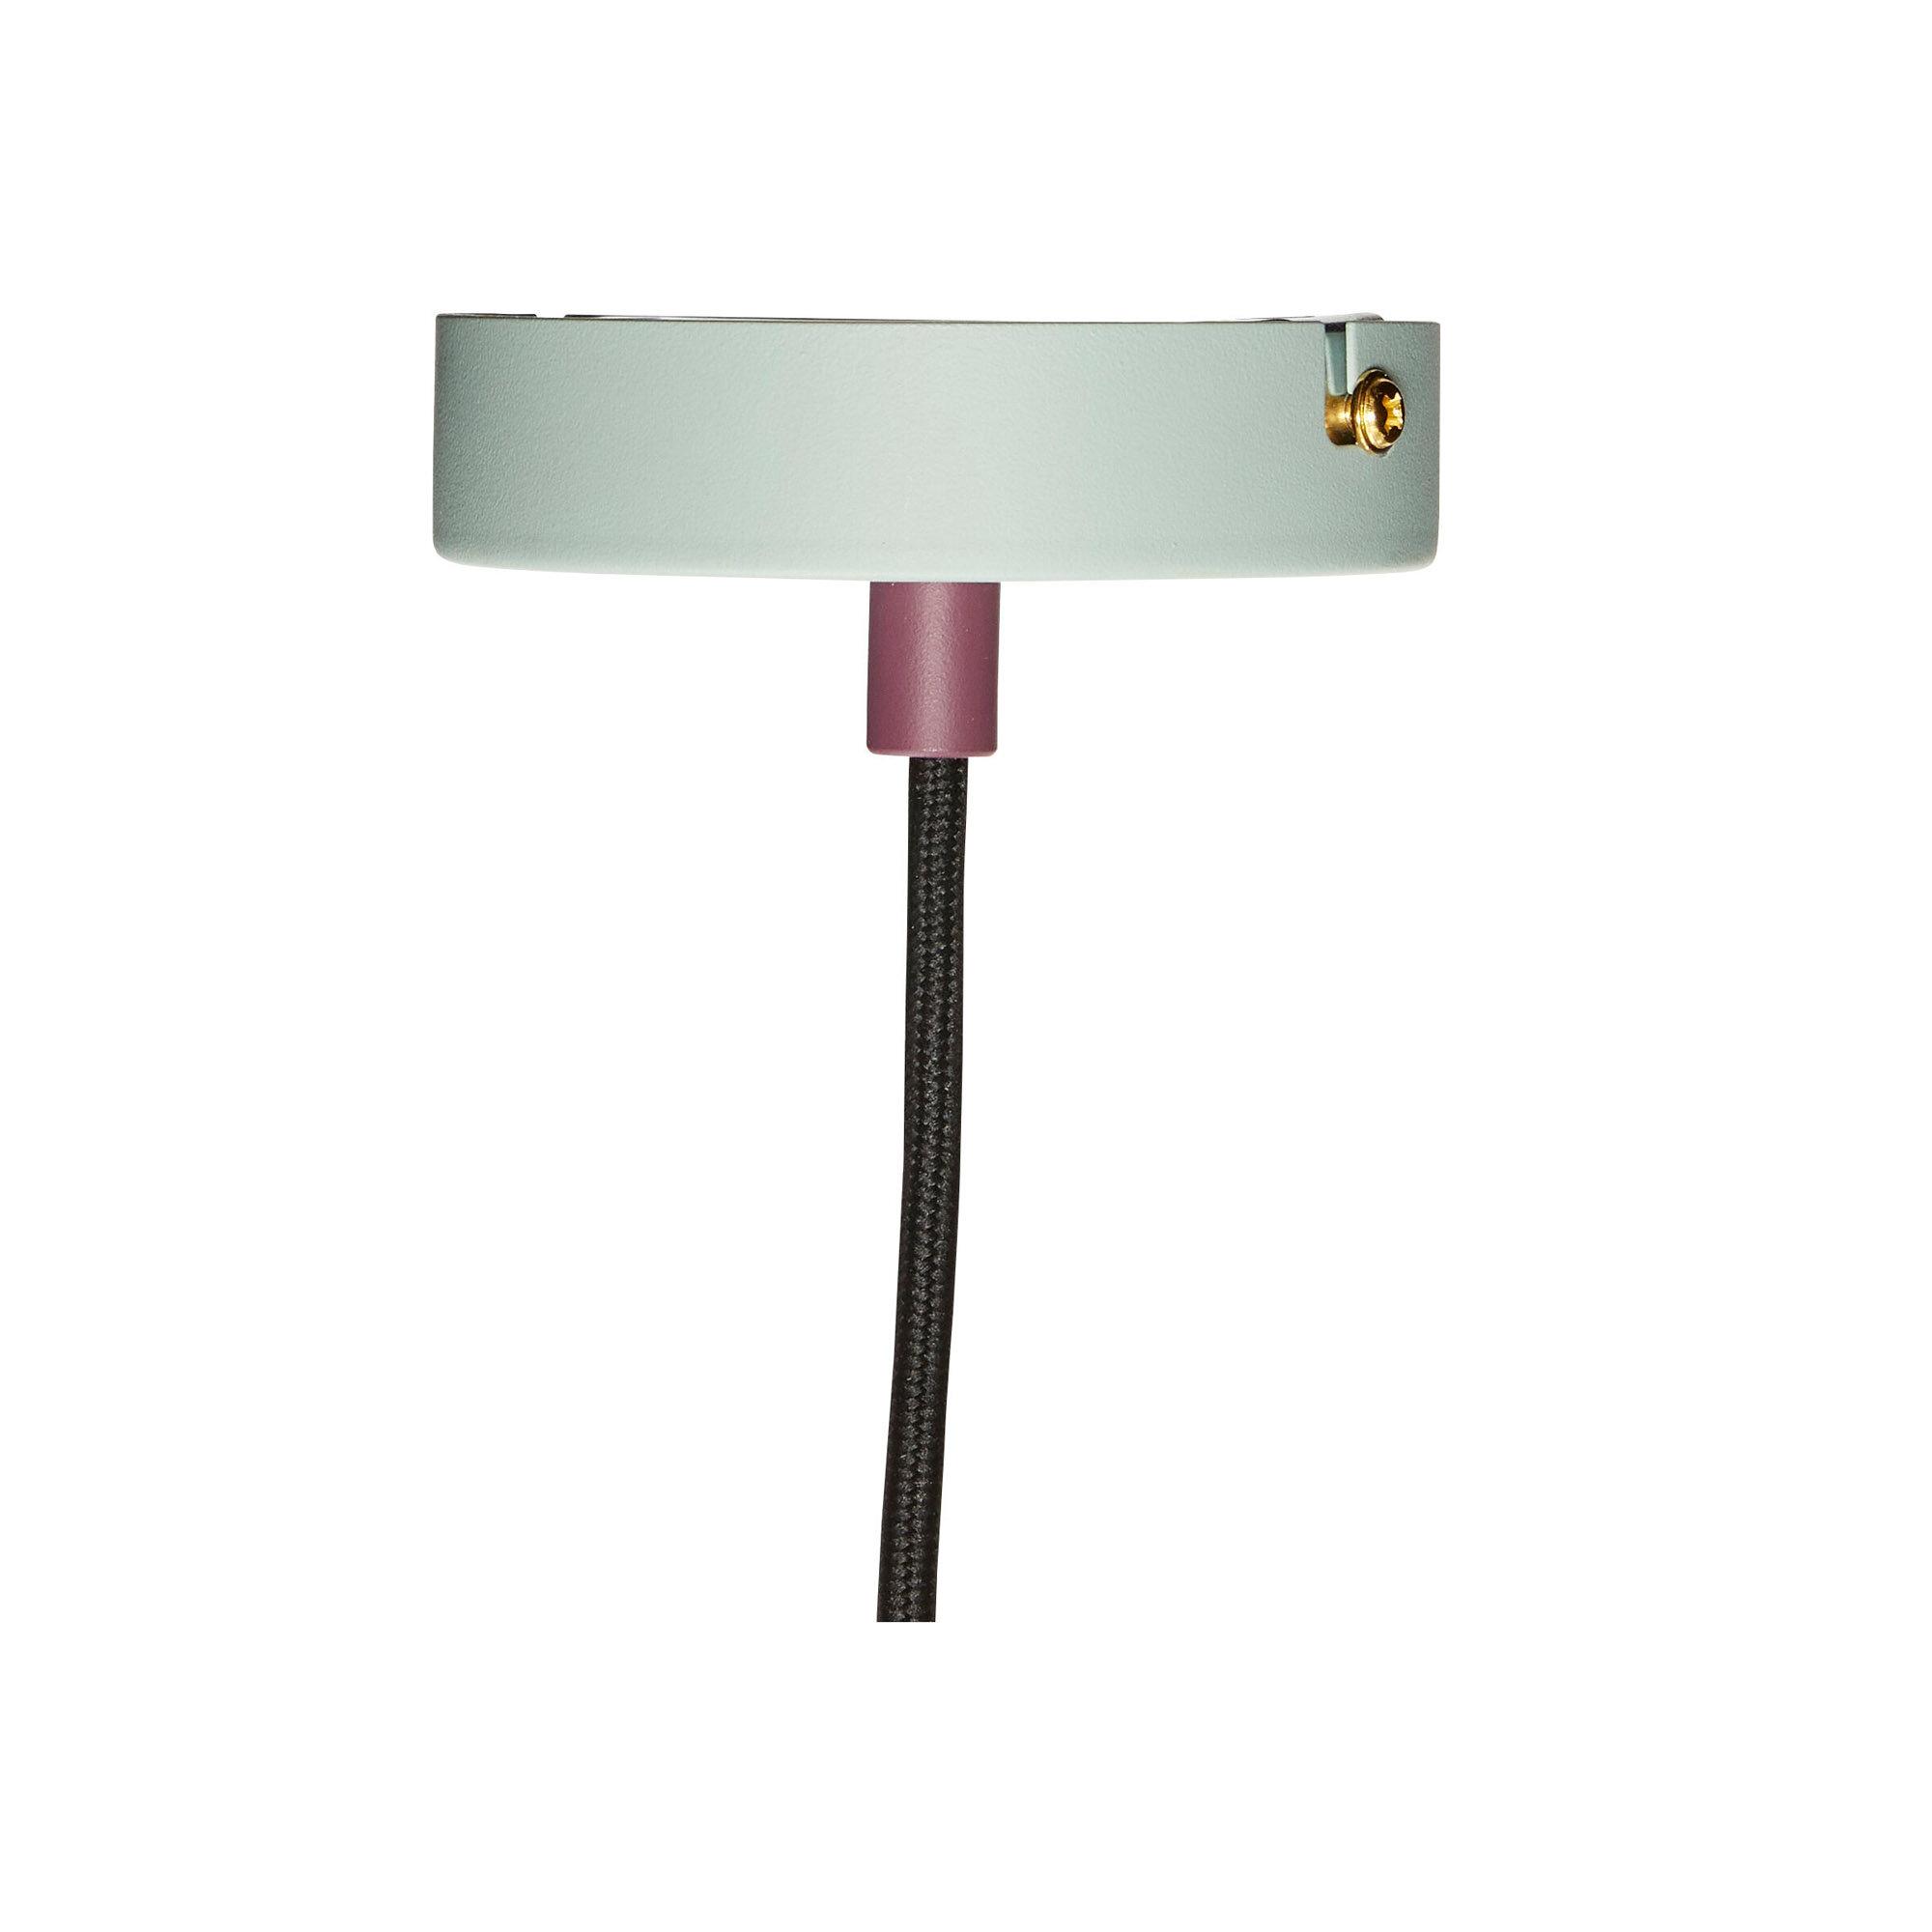  Lampe i metal, sand/blå/mint/bordeau fra Hübsch Interiør i Metal (Varenr: 991406)